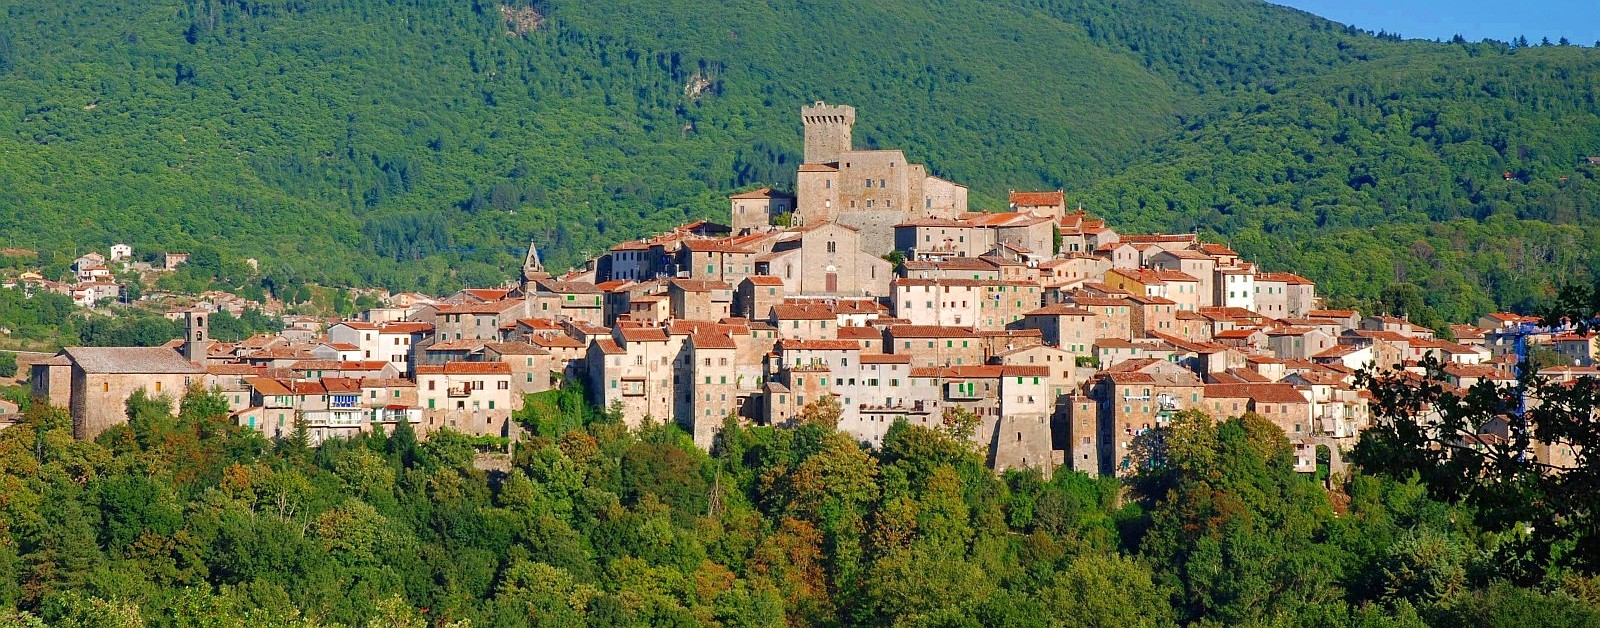 Monte Amiata Toscana vendita immobili agenzia immobiliare amiata